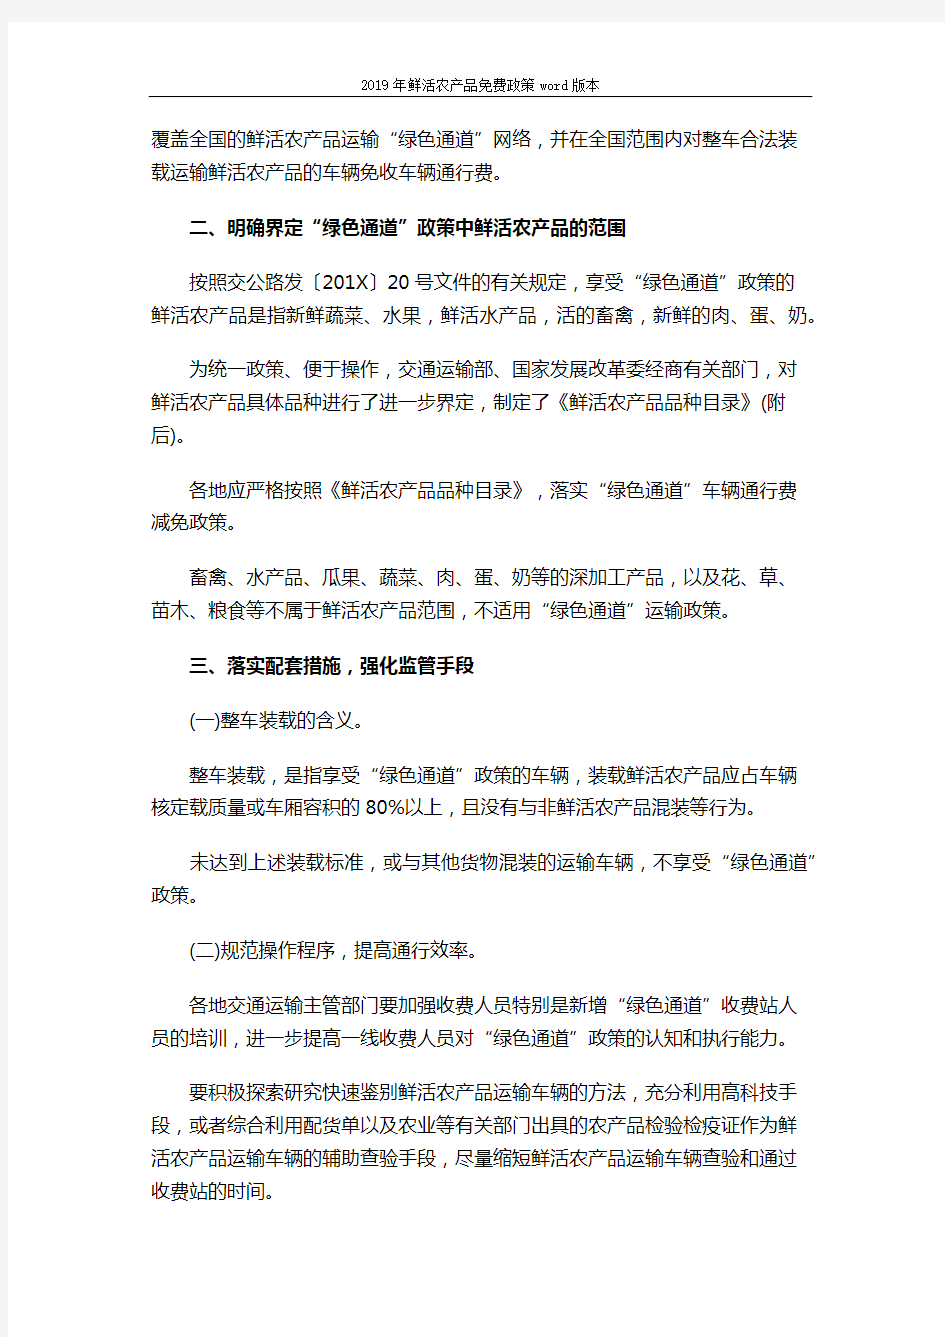 2019年鲜活农产品免费政策word版本 (5页)